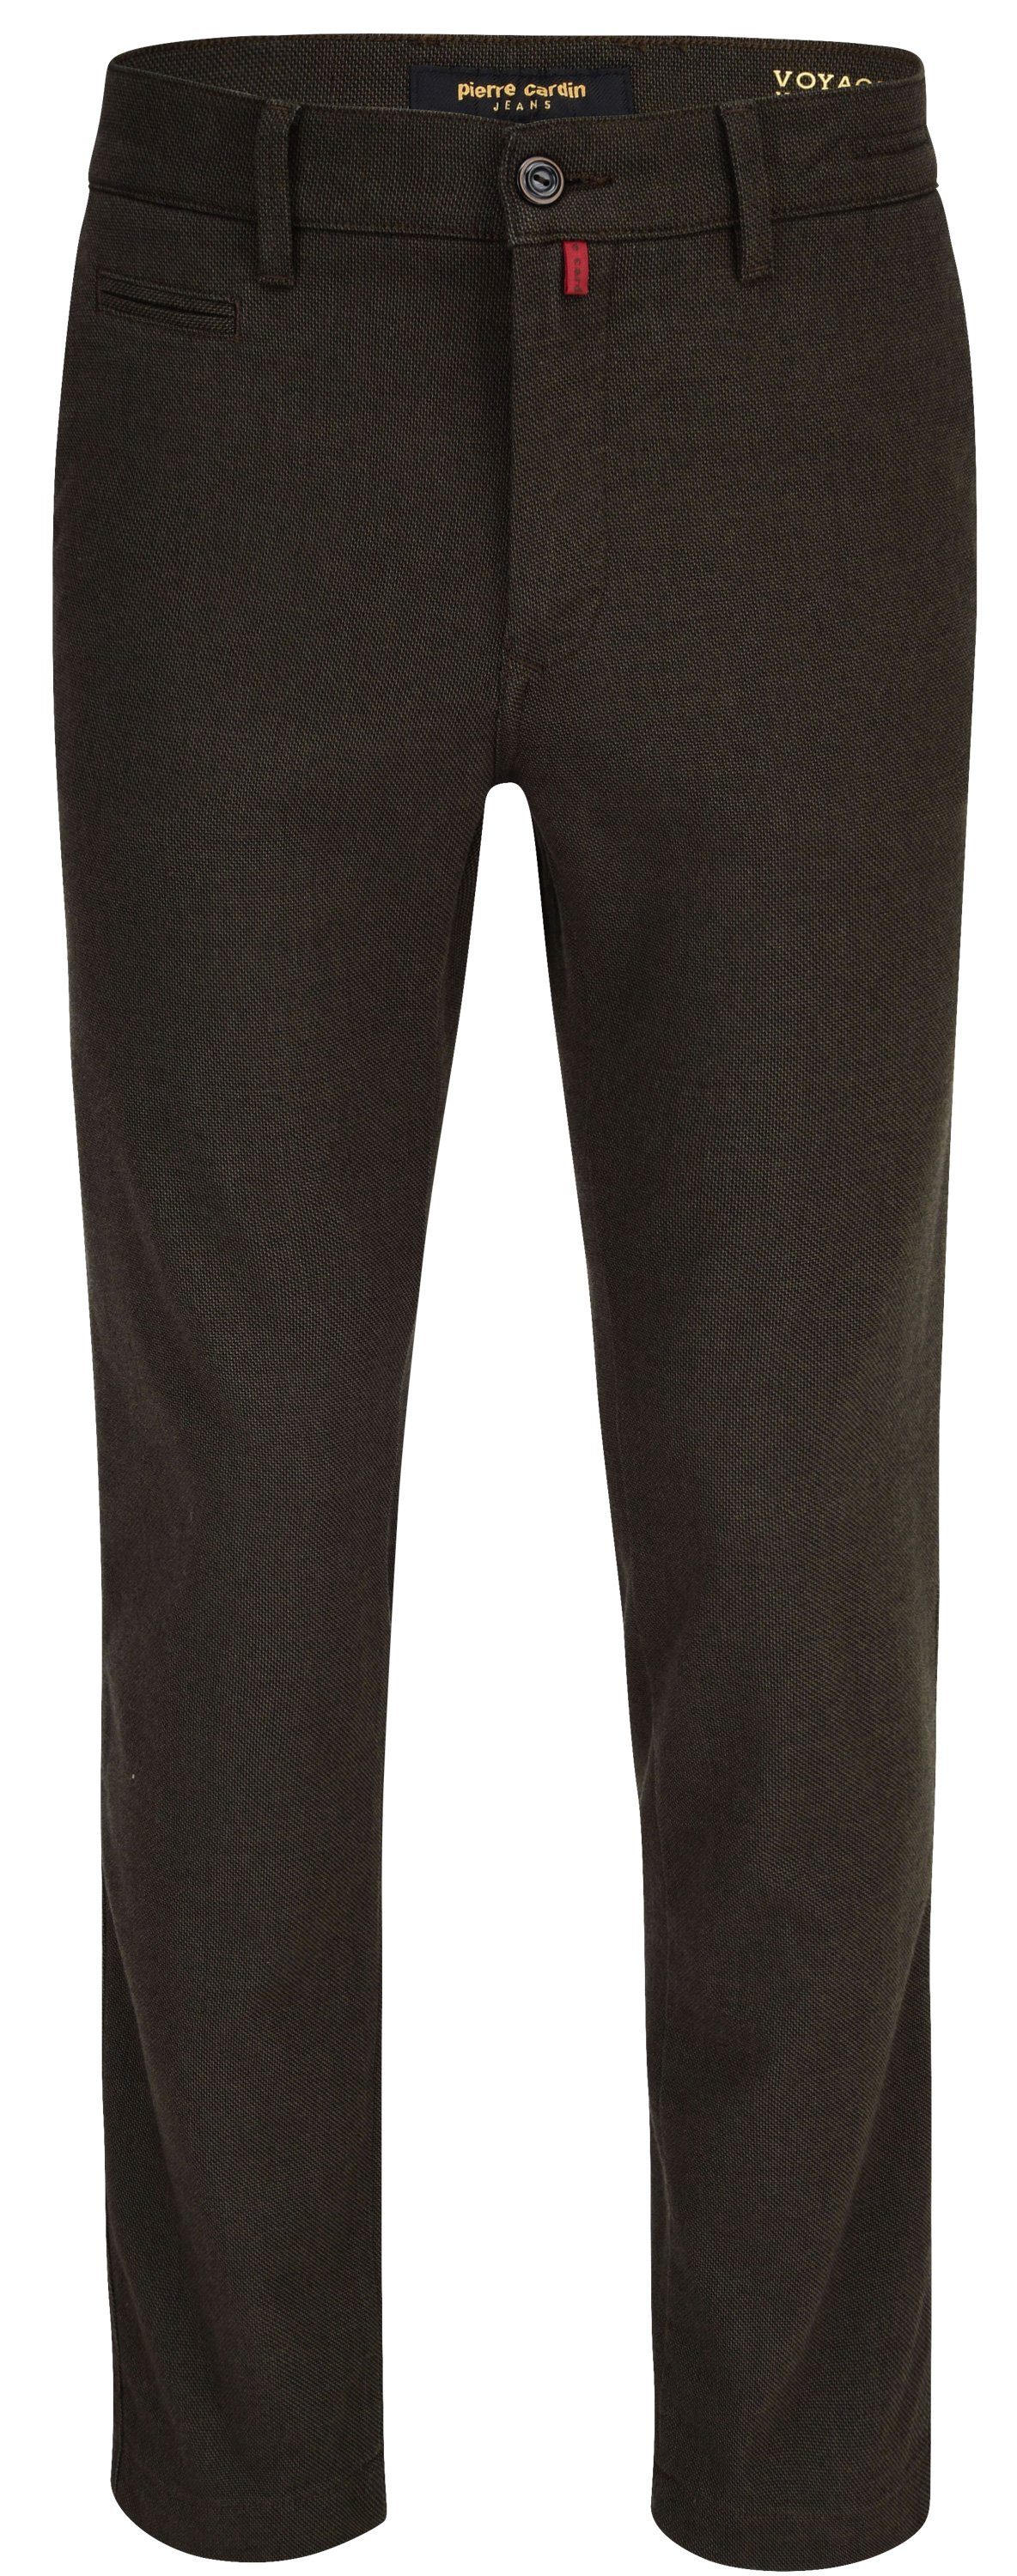 Pierre Cardin 5-Pocket-Jeans PIERRE CARDIN LYON brown flannel chino 33747 4745.75 - VOYAGE